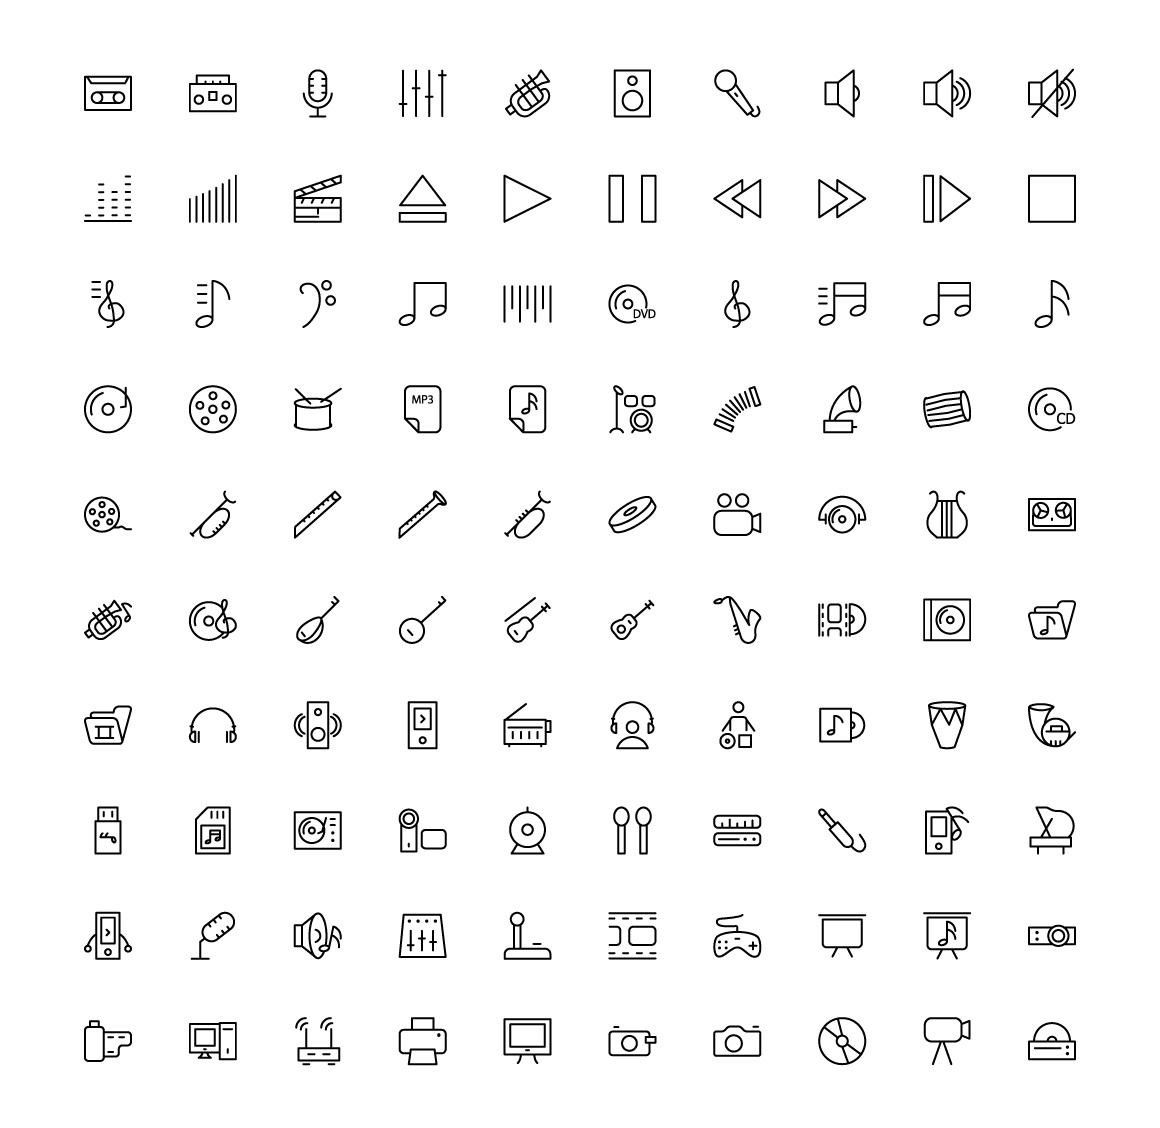 2000 枚扁平化多种类 icon 图标打包-稀土区